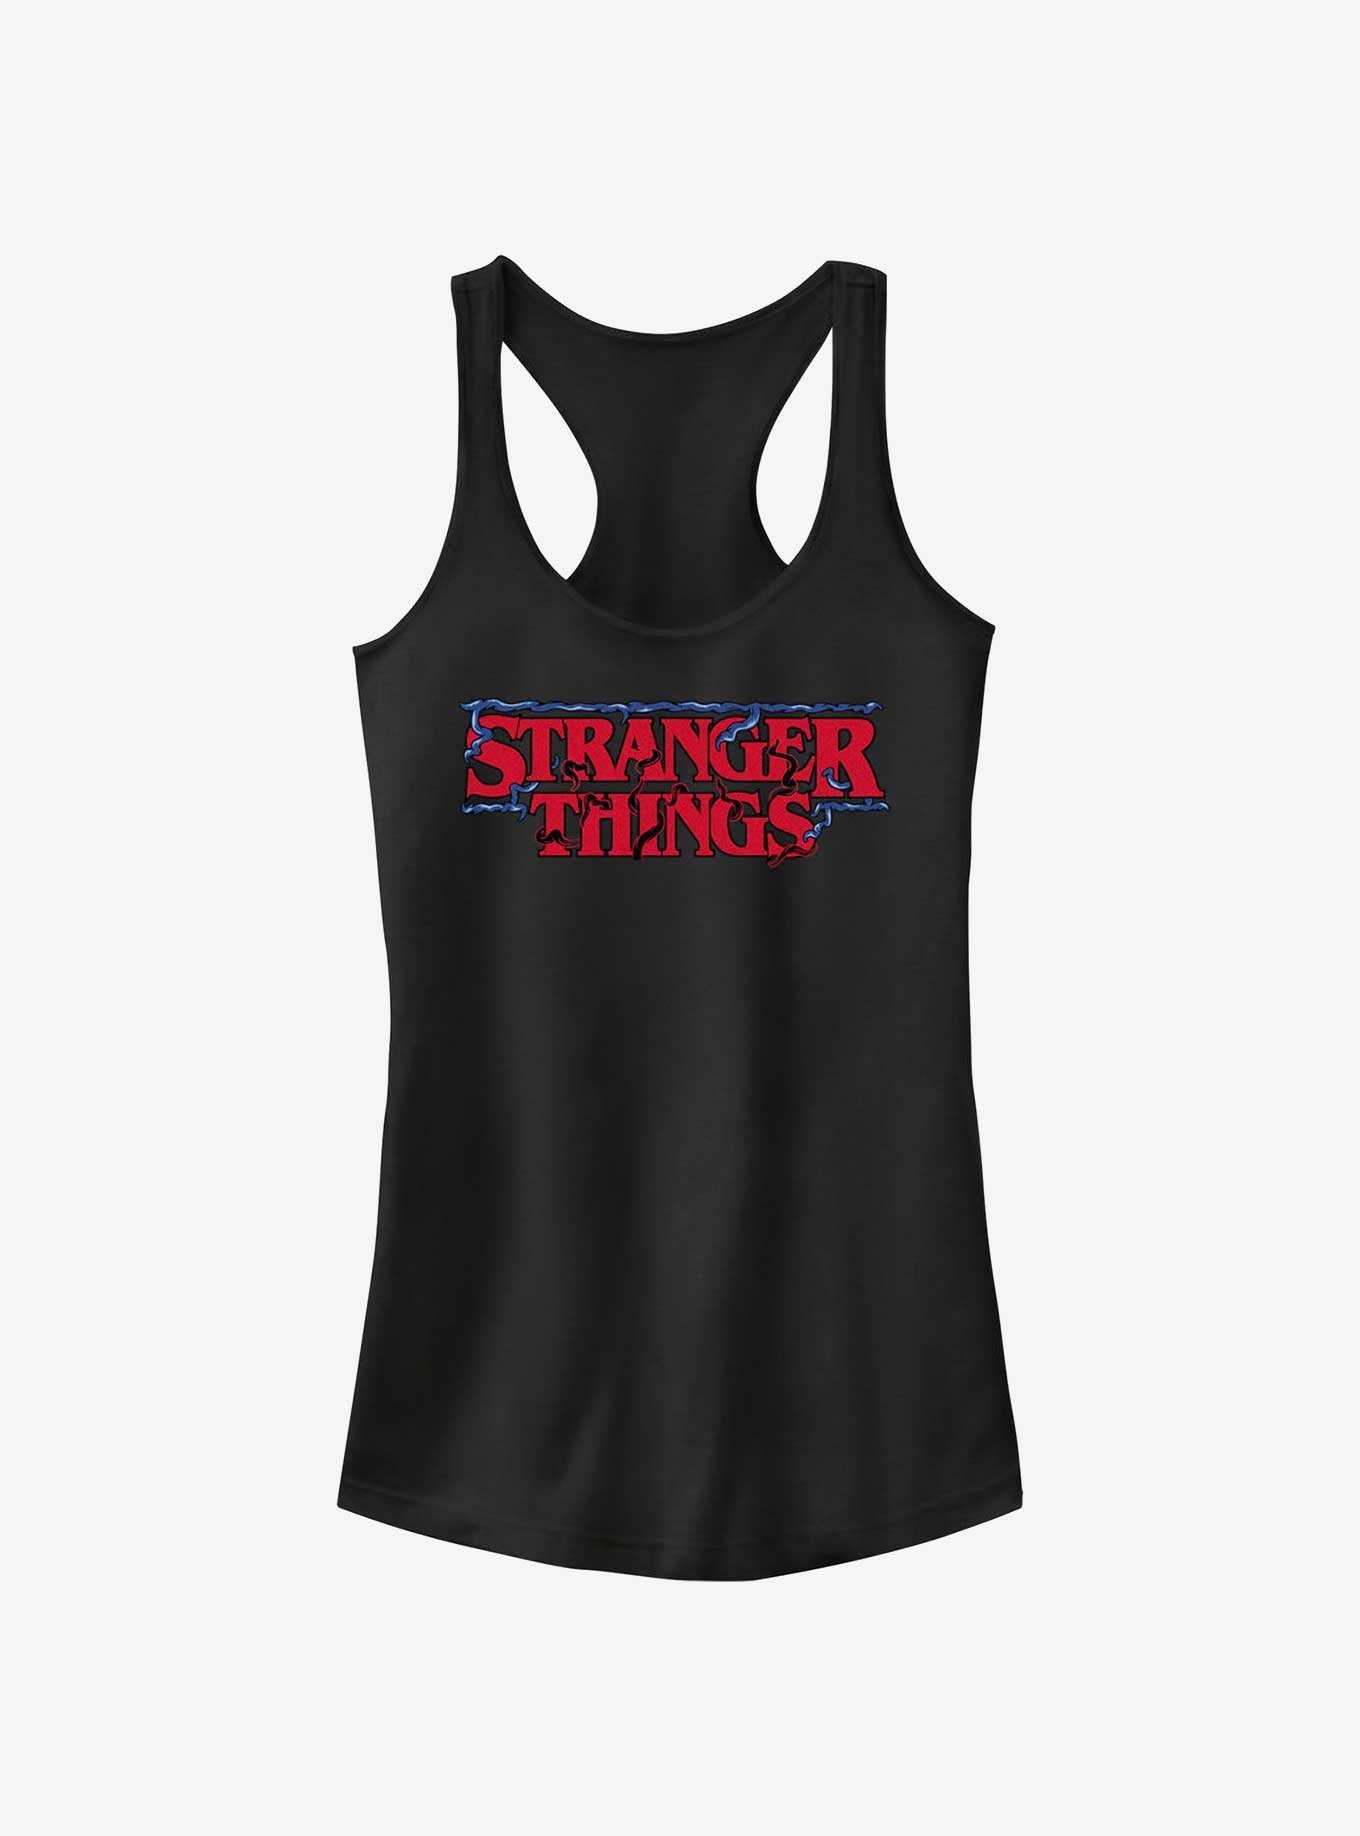 Stranger Things Intertwined Vines Logo Girls Tank, , hi-res